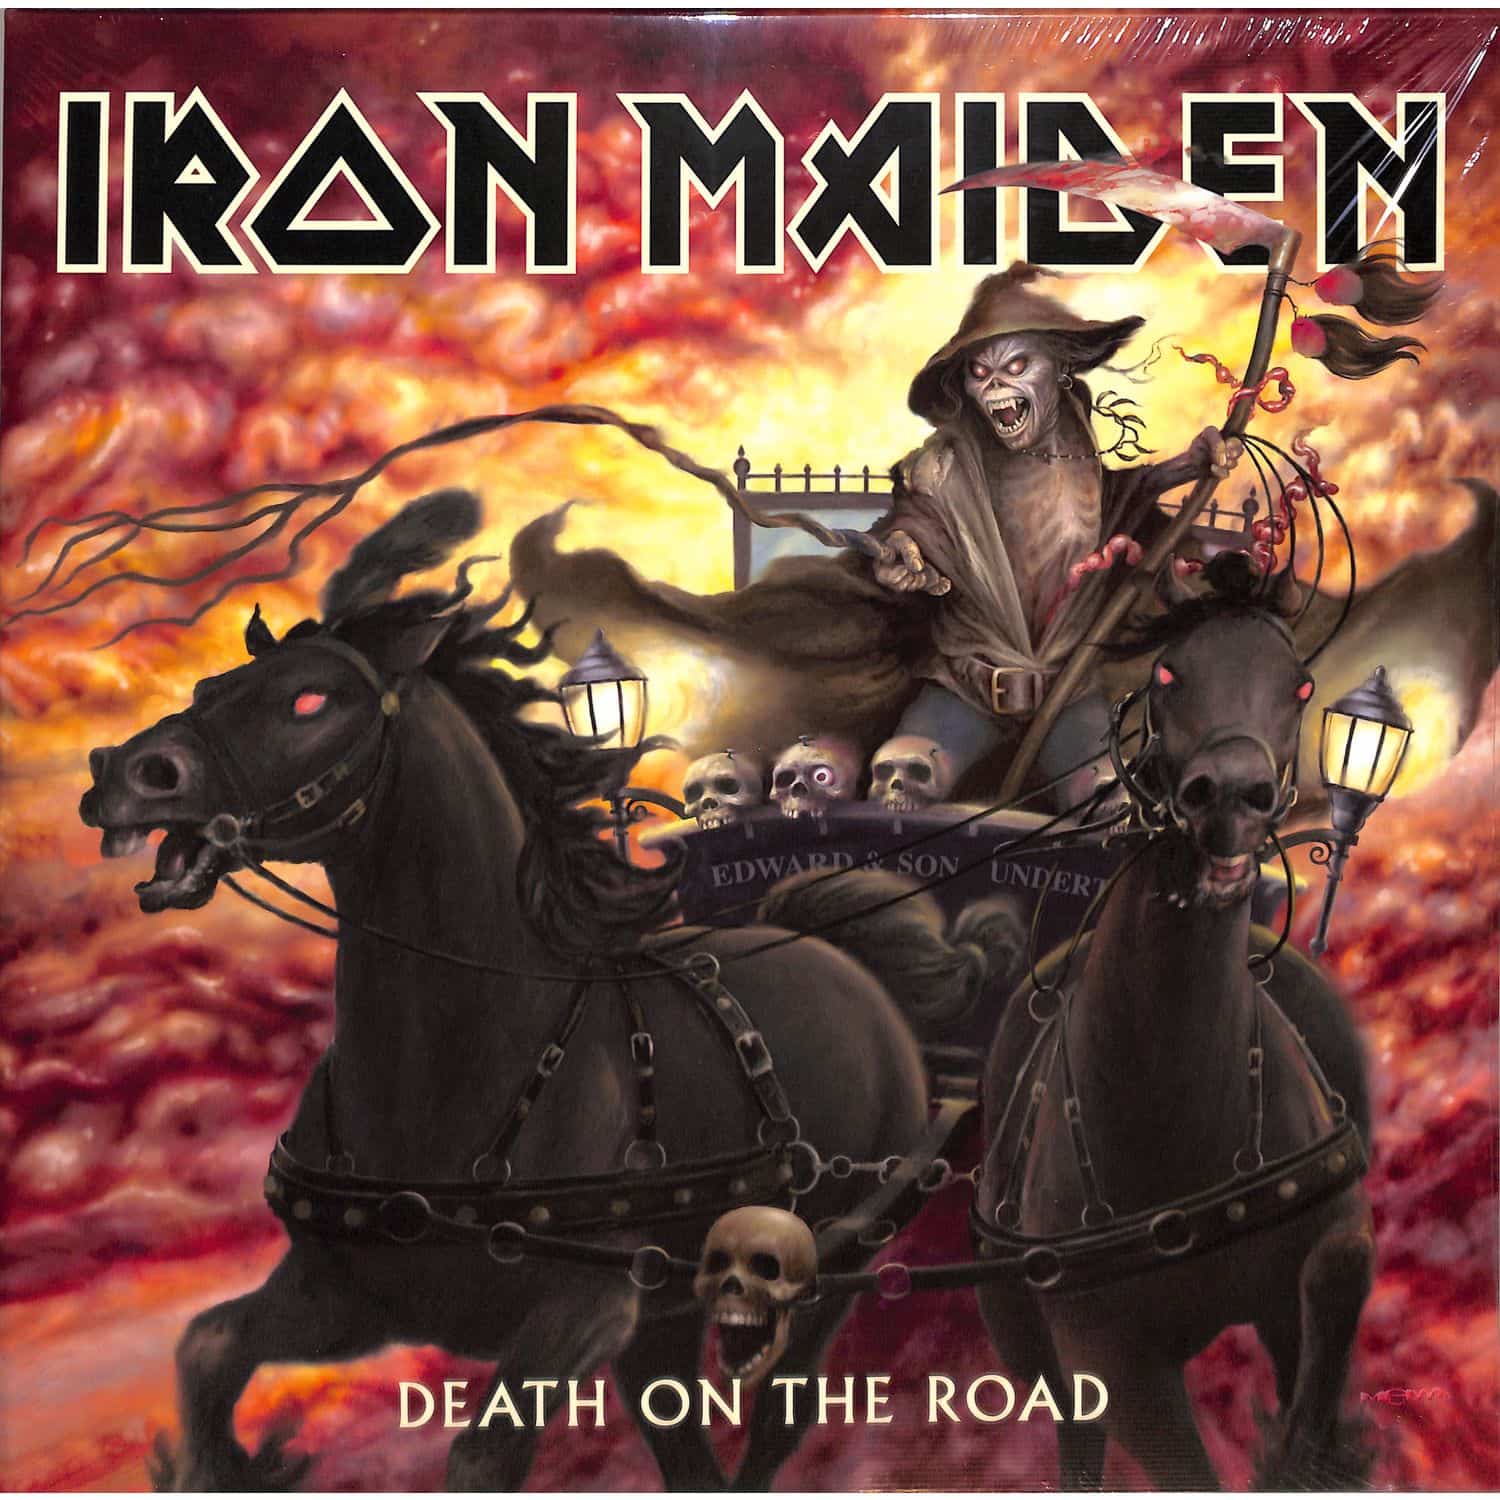 Iron Maiden - DEATH ON THE ROAD 